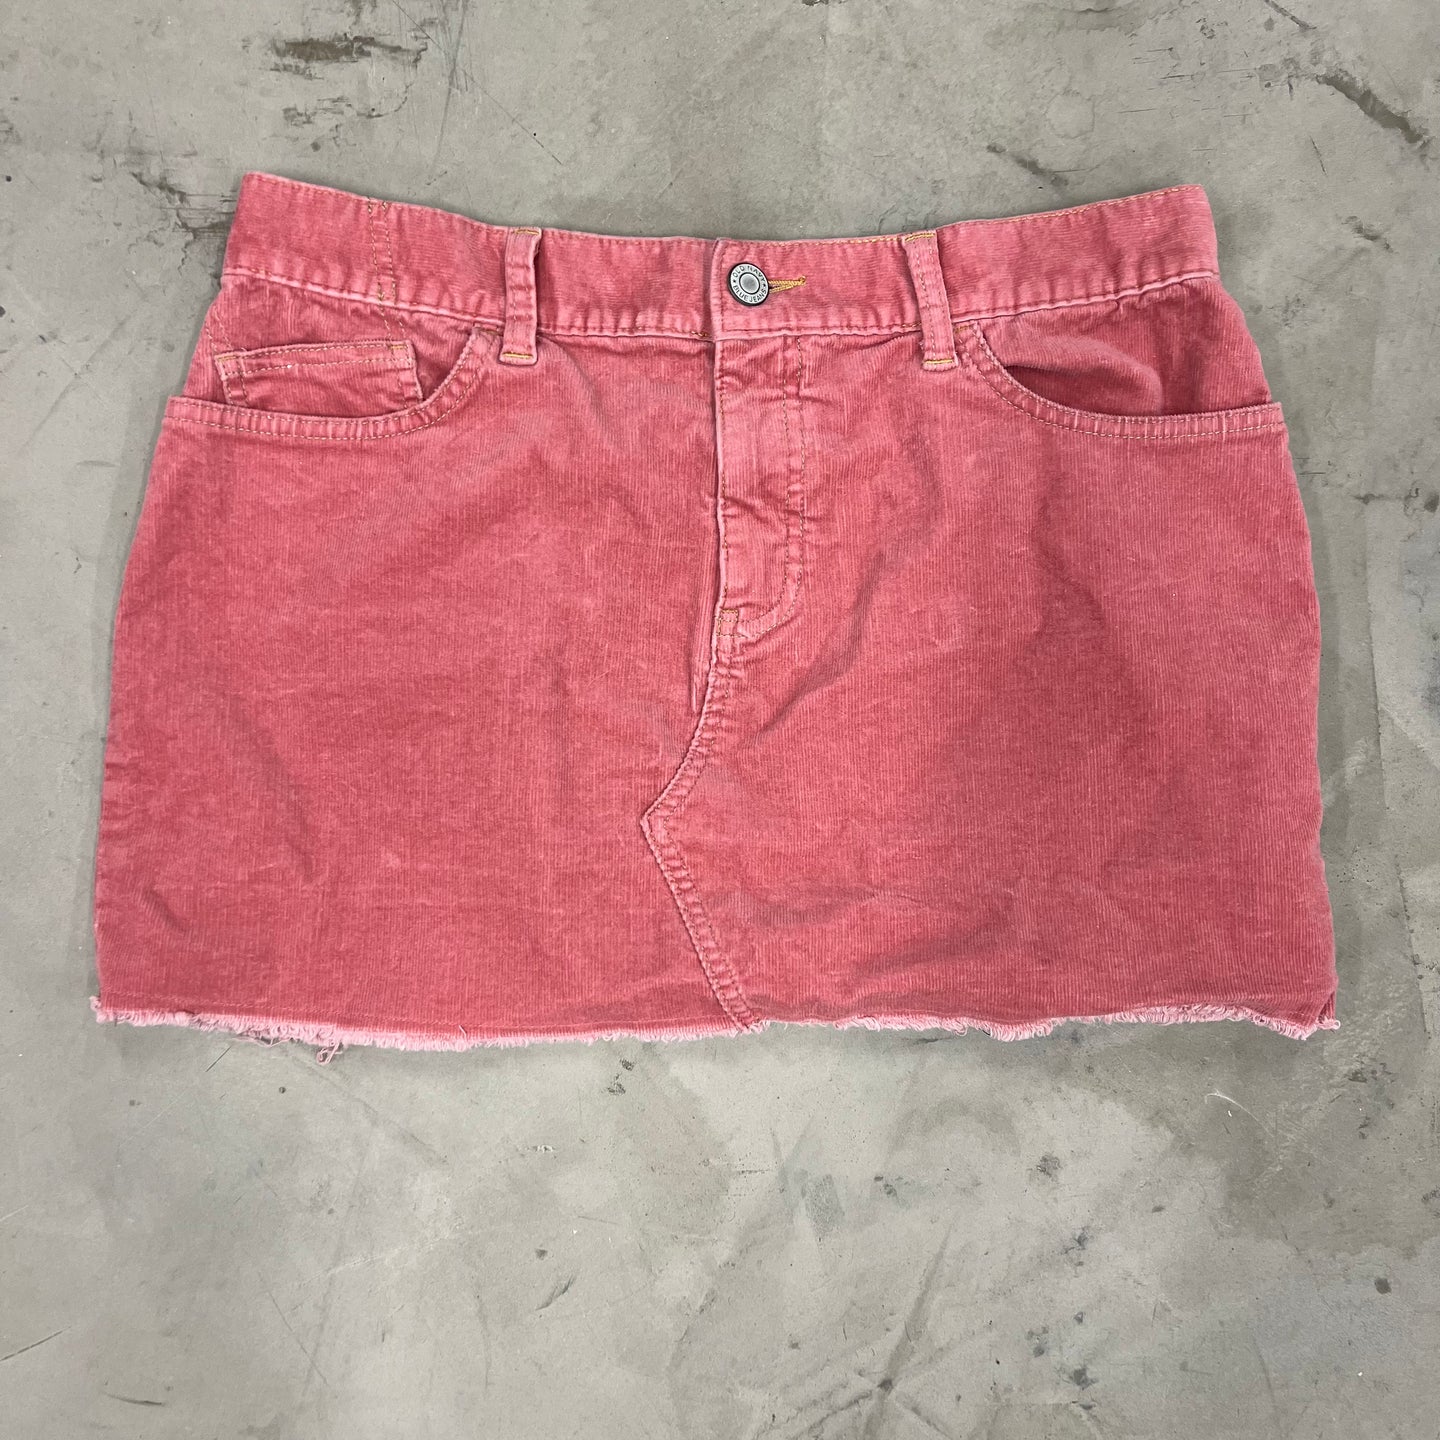 VTG Woman’s Pink velour Skirt